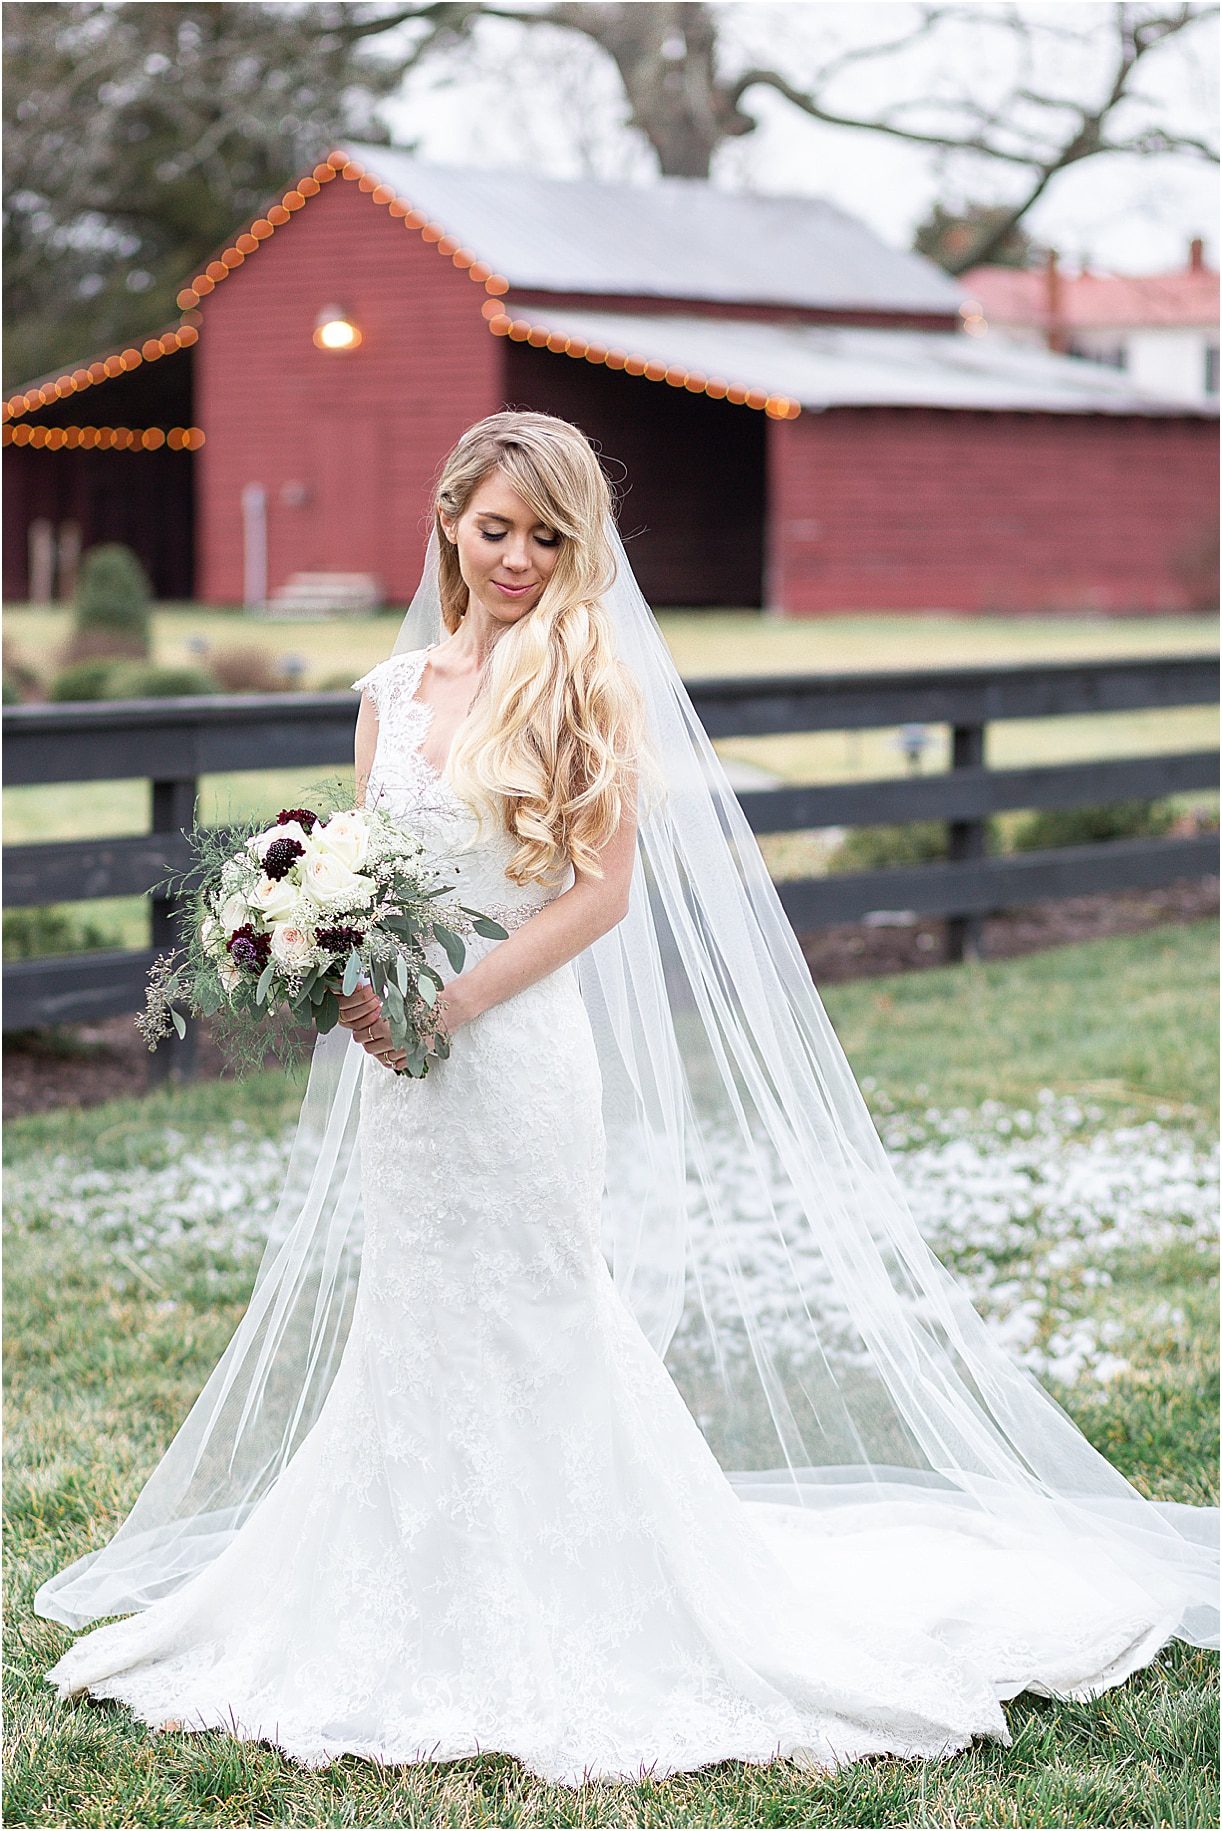 Steel Blue and Burgundy Virginia Wedding | Hill City Bride Wedding Ideas Blog Bridal Bouquet